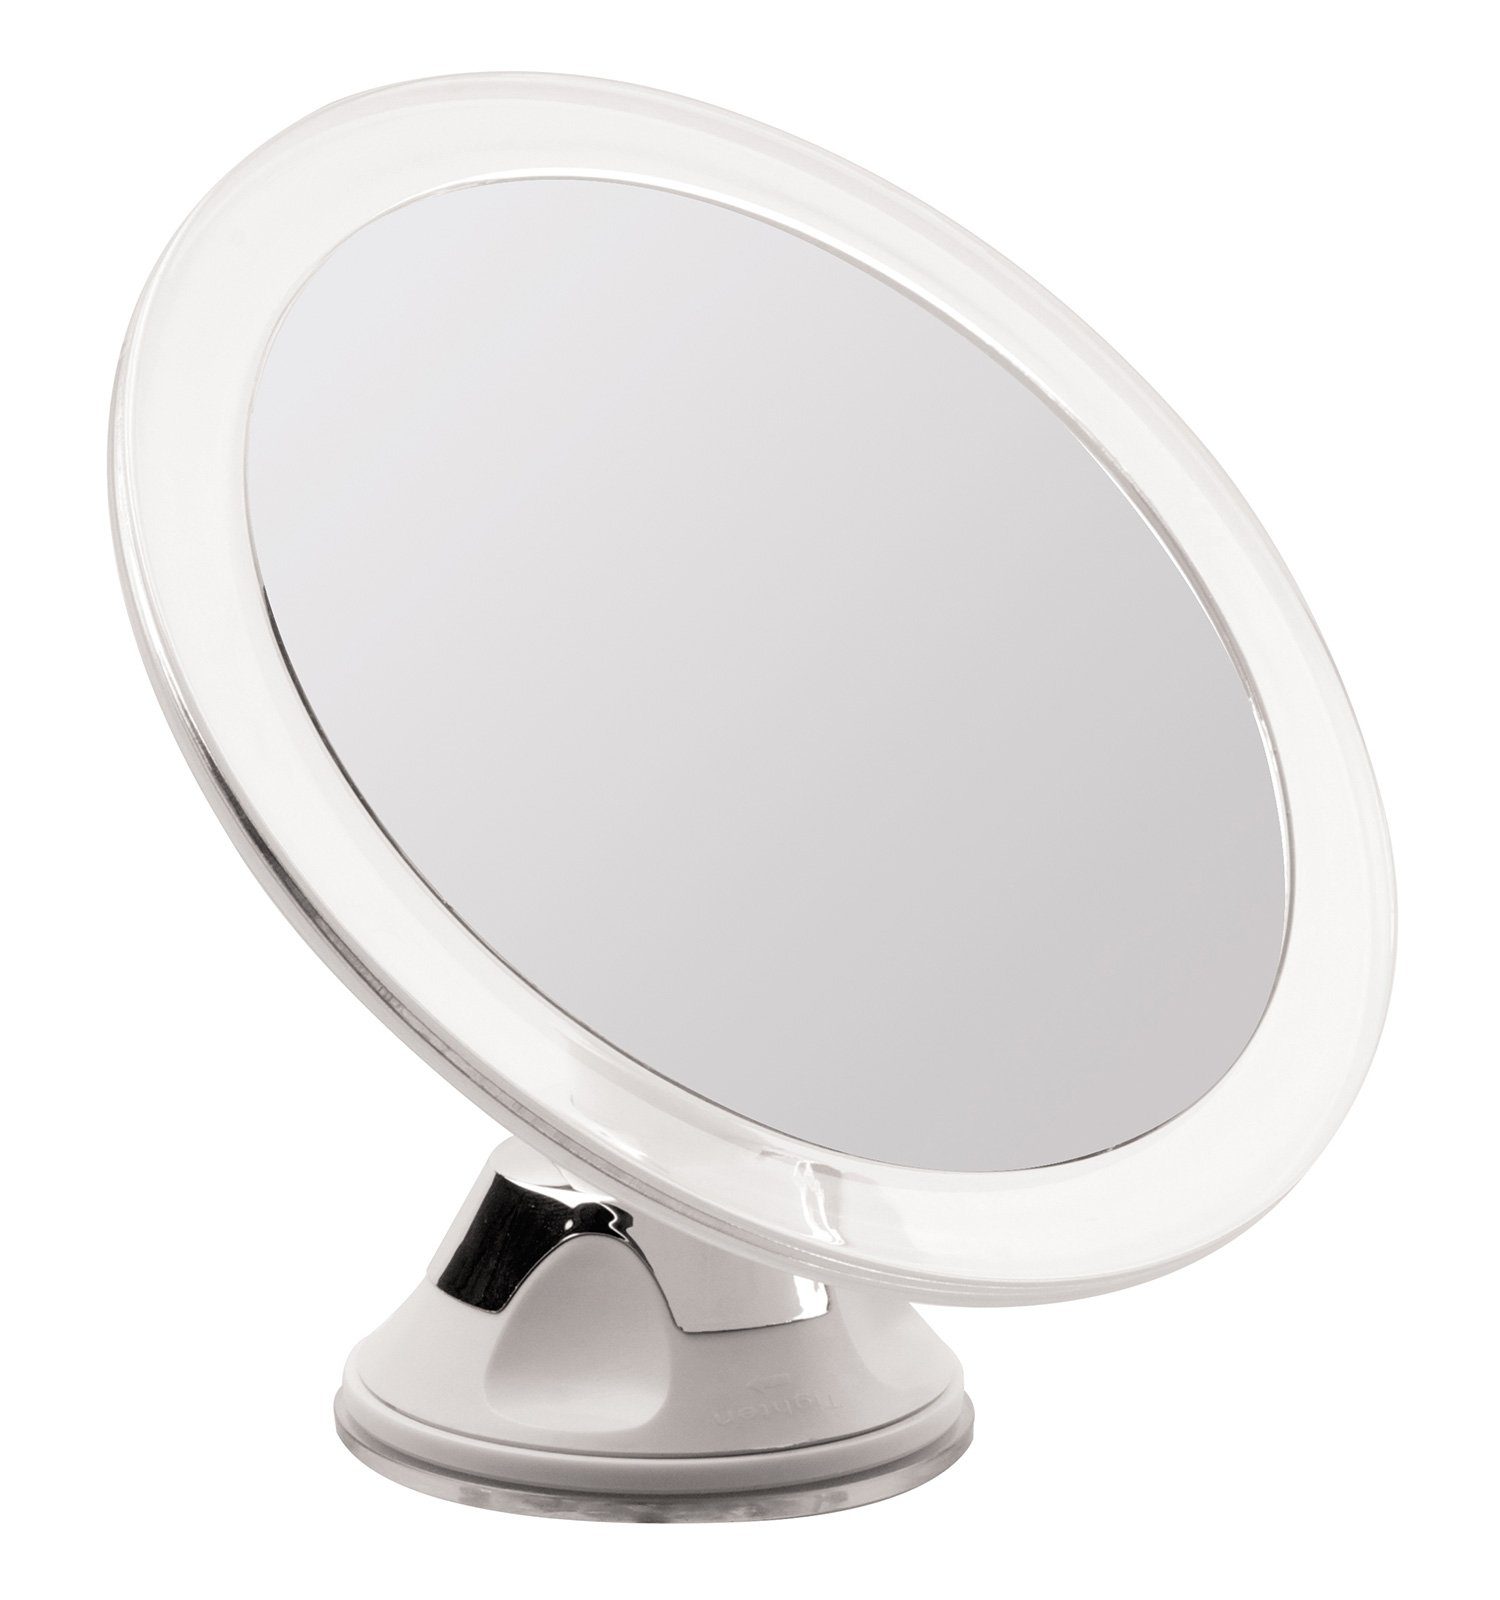 Koskaderm Spiegel Kosmetex Spiegel, mit 5-fach Vergrößerung, Ø 12 cm, Kunststoff, Wandhalterung - Saugnapf